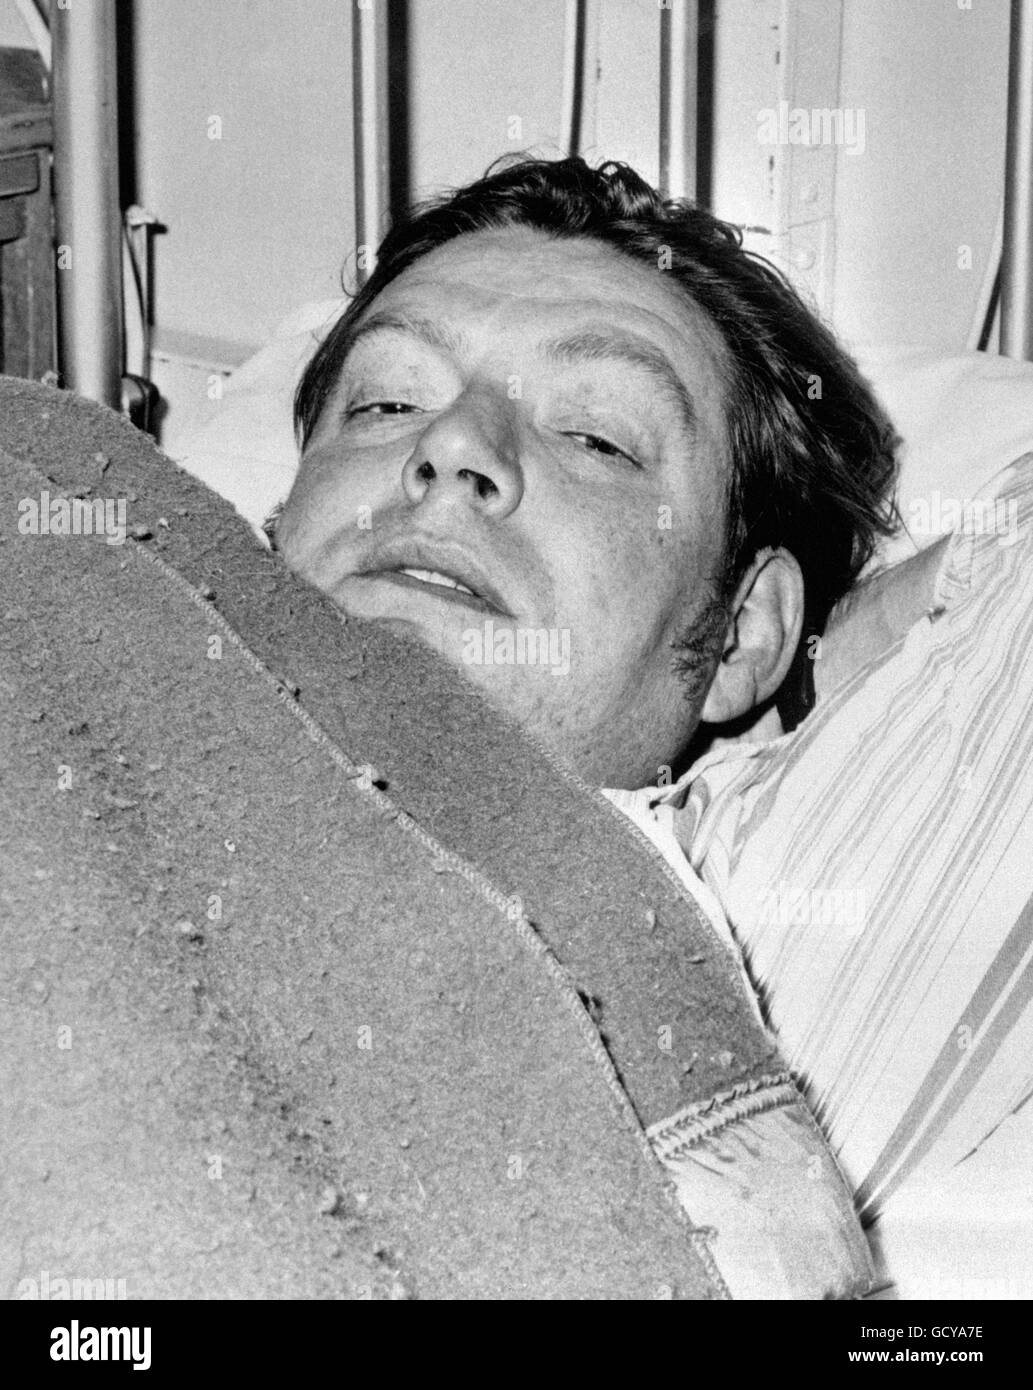 Im Penzance Hospital, einem der beiden Überlebenden der MV Lovat-Katastrophe, kocht Stewart Roy Hawley. Das Frachtschiff ging in rauer See vor dem Ende des Landes unter. Elf Besatzungsmänner wurden getötet. Stockfoto